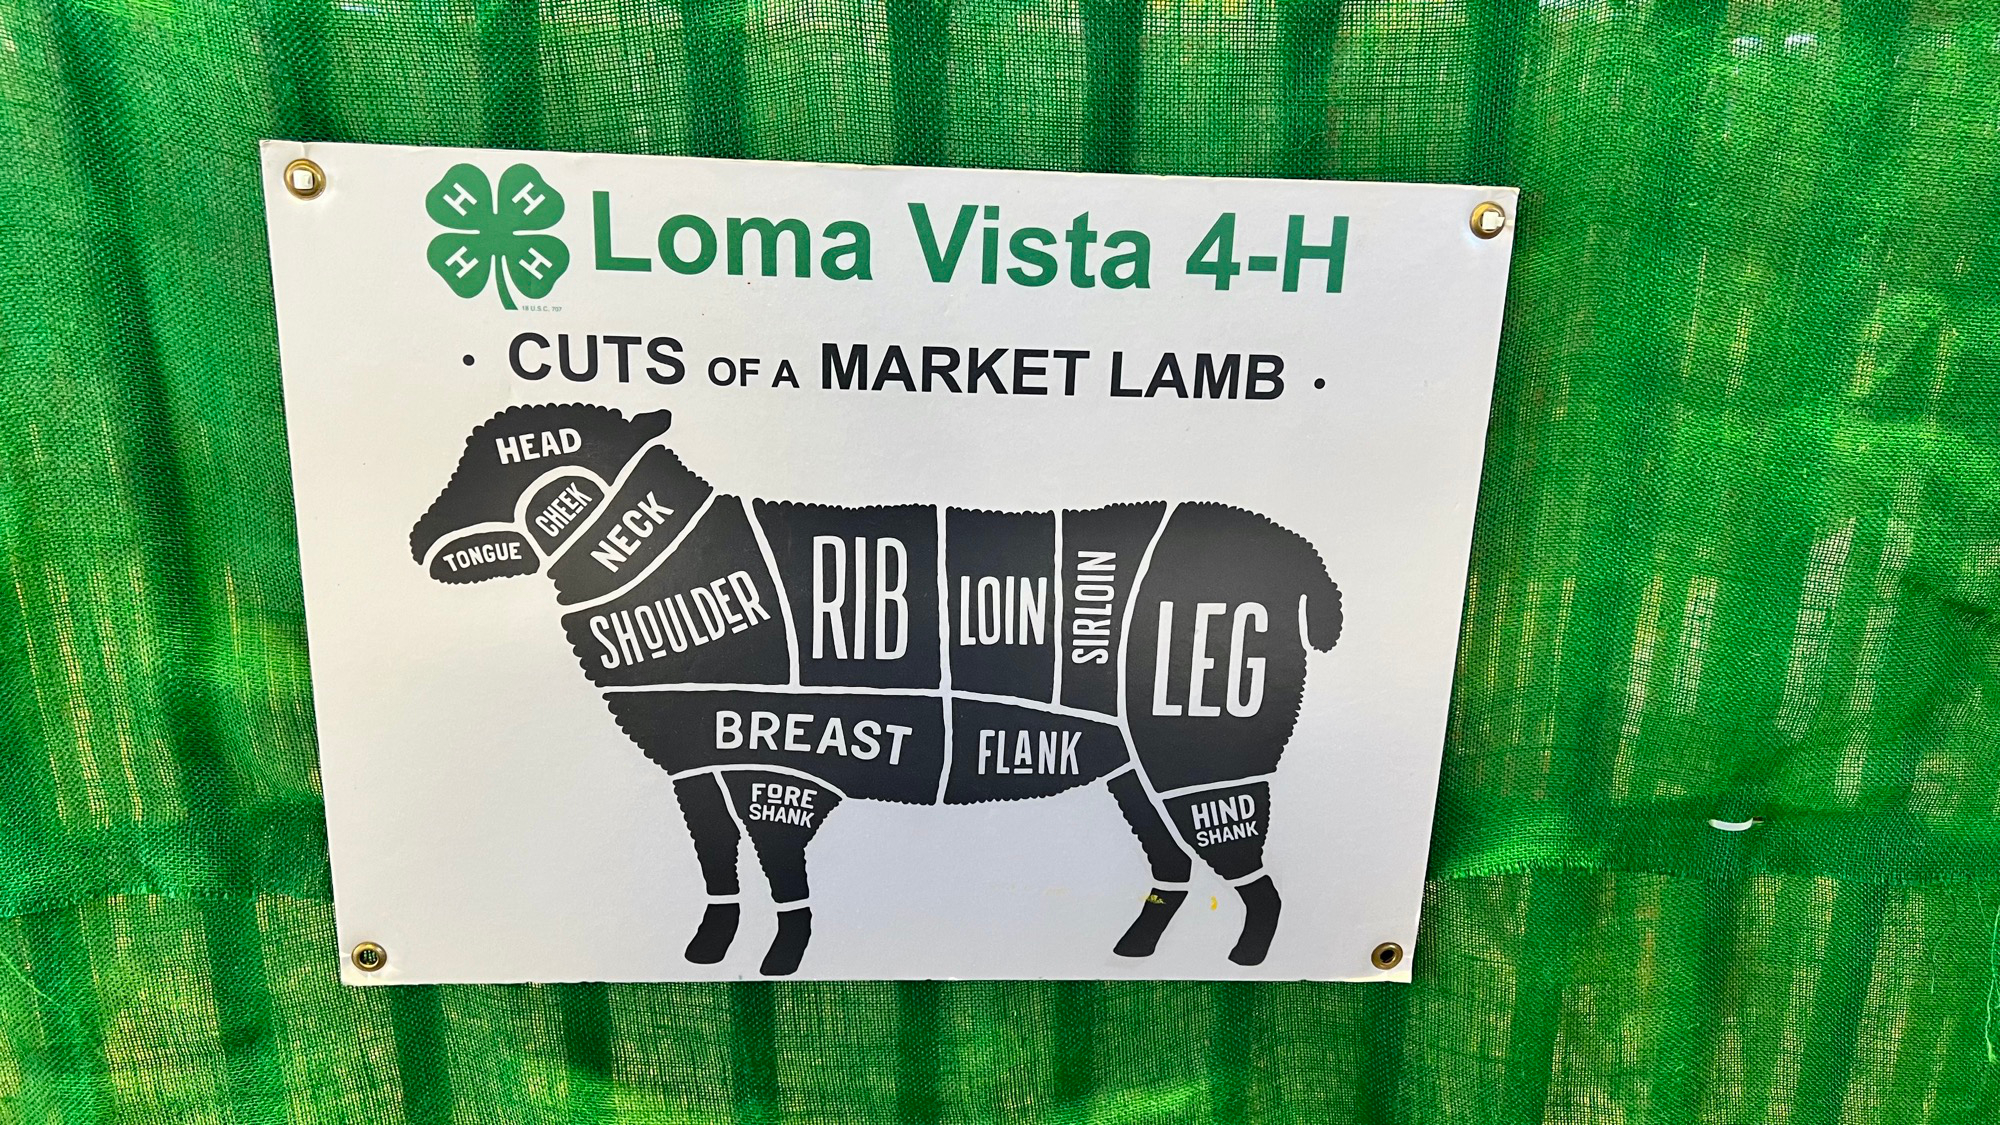 Cuts of a Market Lamb